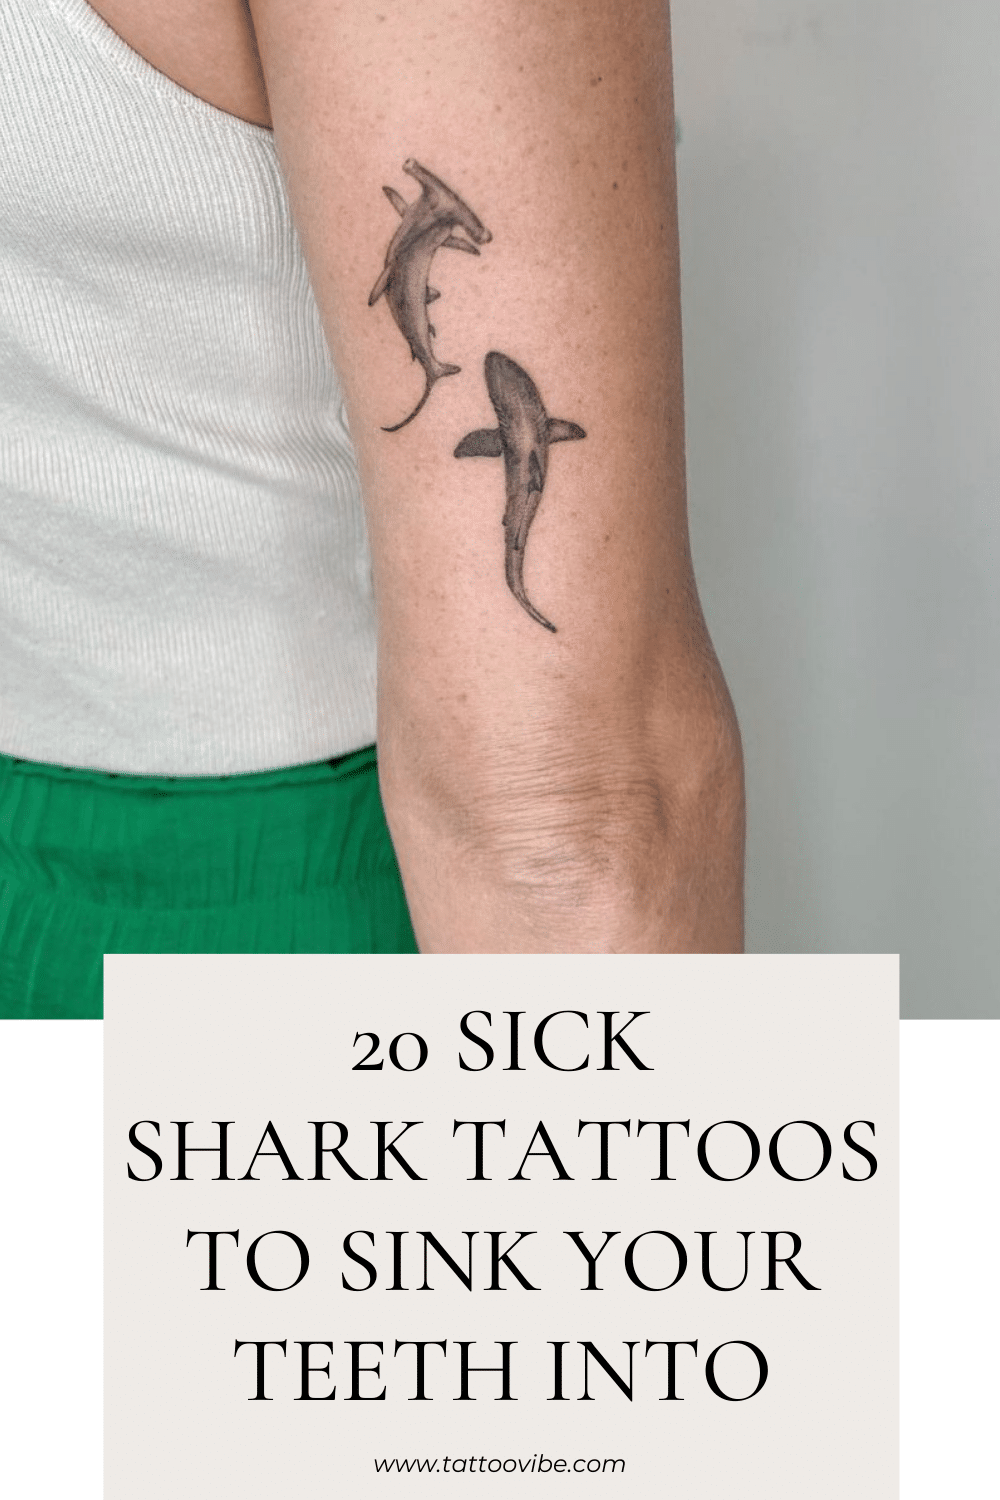 20 tatuaggi di squali malati in cui affondare i denti